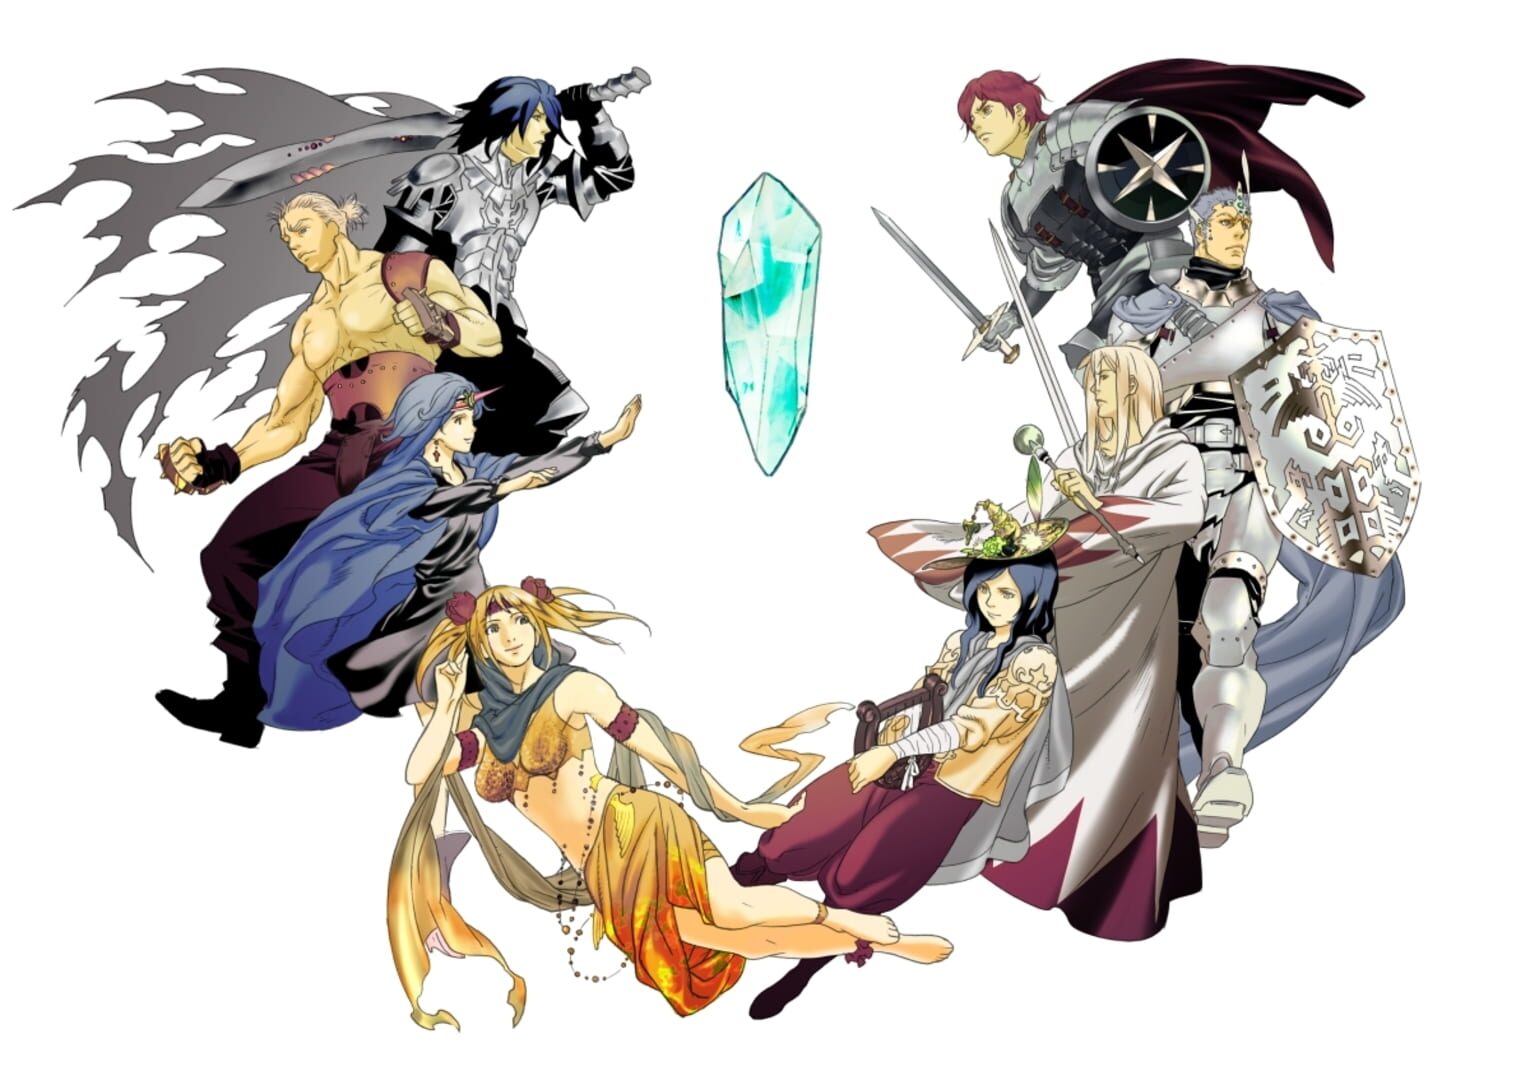 Arte - Final Fantasy Dimensions